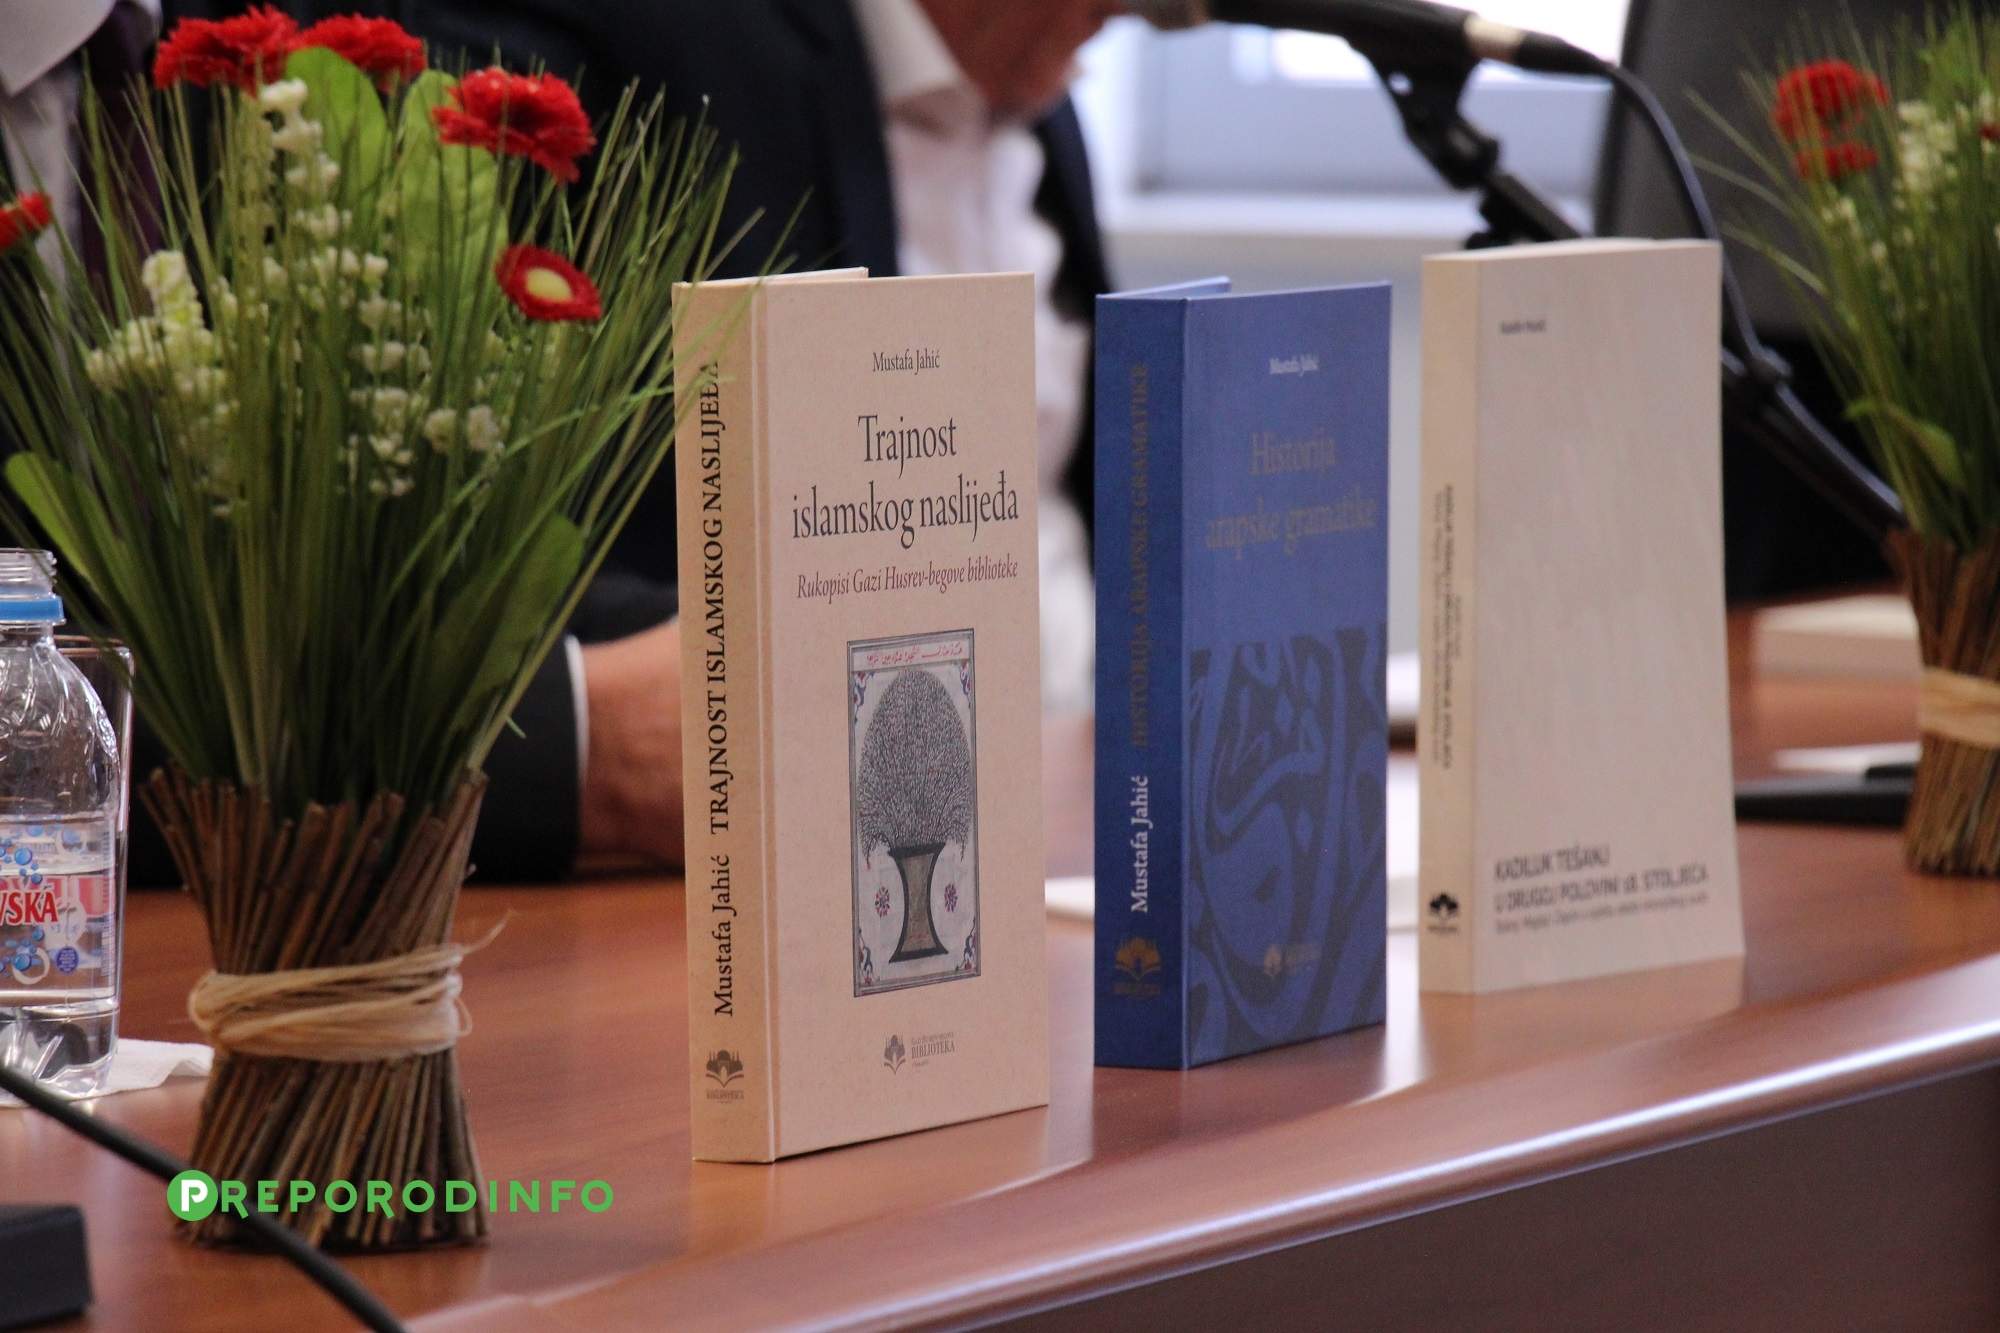 IMG_9540.JPG - Promovirana nova izdanja Gazi Husrev-begove biblioteke u Sarajevu